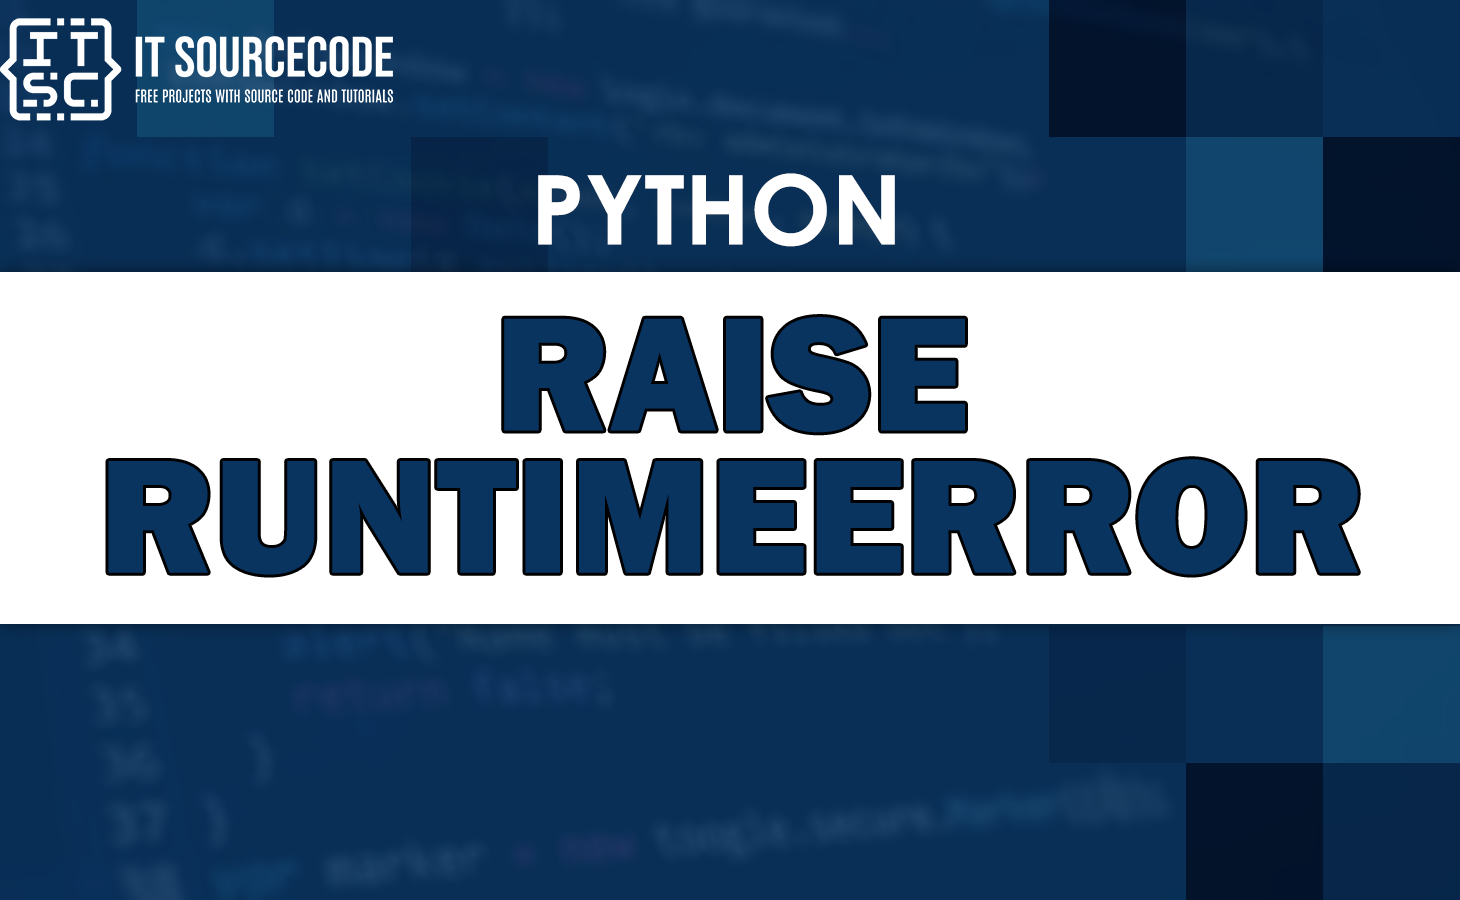 Python raise runtimeerror